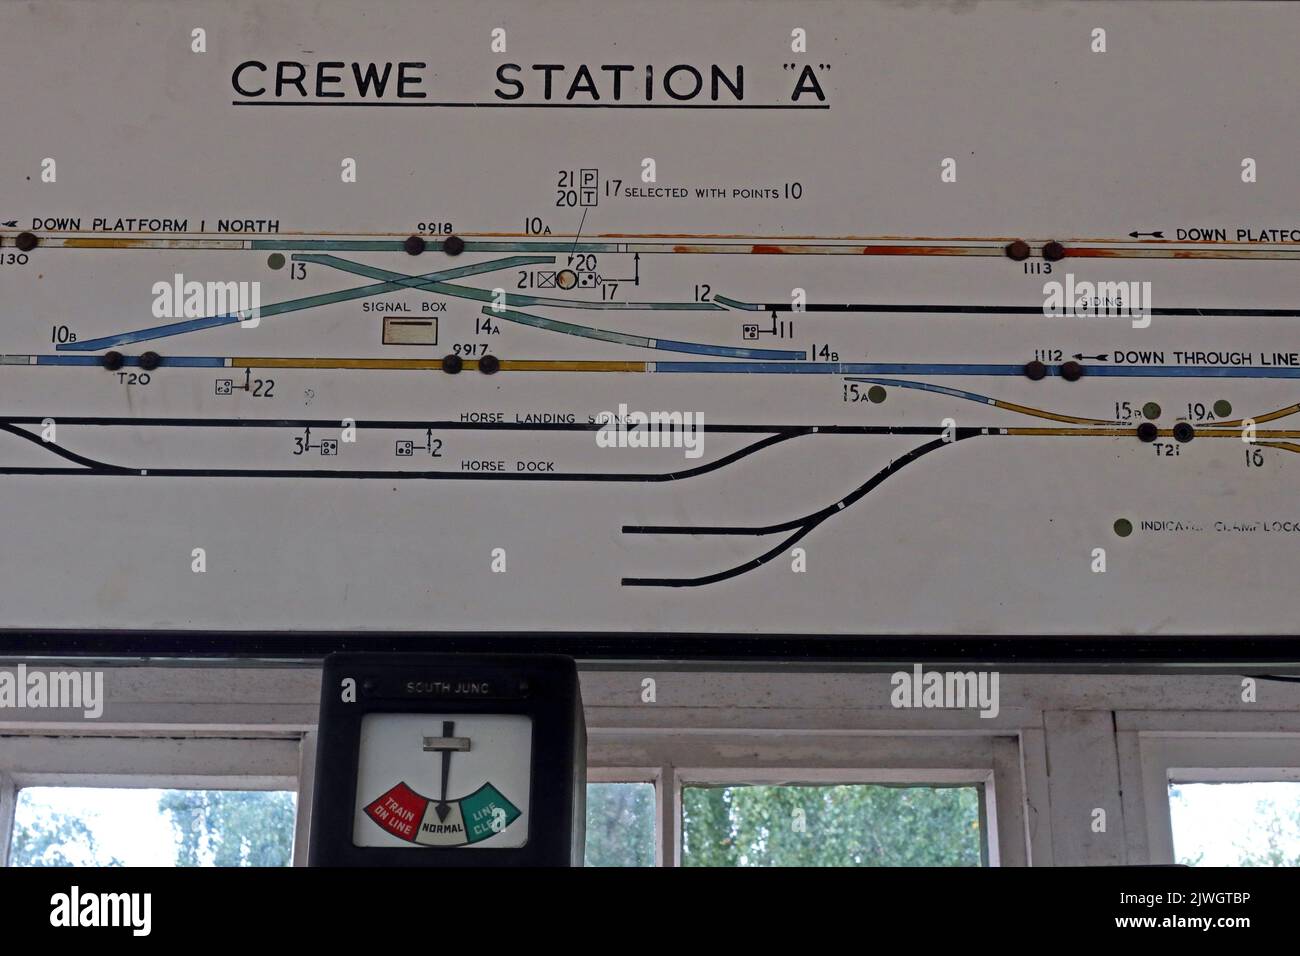 Mappa schematica di segnaletica ferroviaria vittoriana tradizionale, Crewe Station A, a Cheshire, Inghilterra, Regno Unito, CW1 2DB Foto Stock